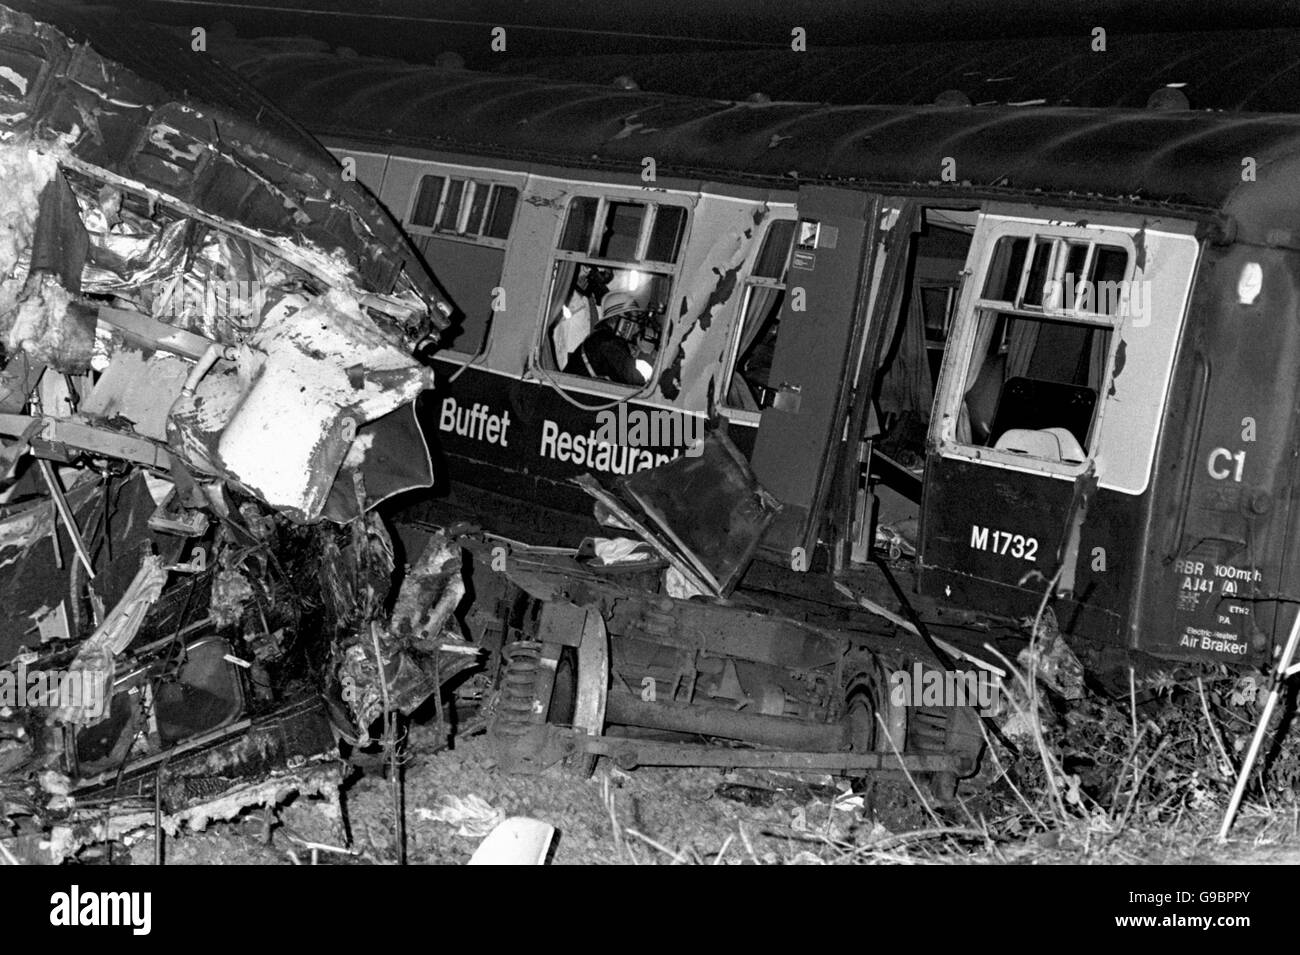 Nach dem Eisenbahnunfall in Colwich wurden die Wagen zerstört, an denen zwei Express-Züge beteiligt waren. Aufgrund der großen Stärke der beteiligten Fahrzeuge wurden keine Passagiere getötet Stockfoto